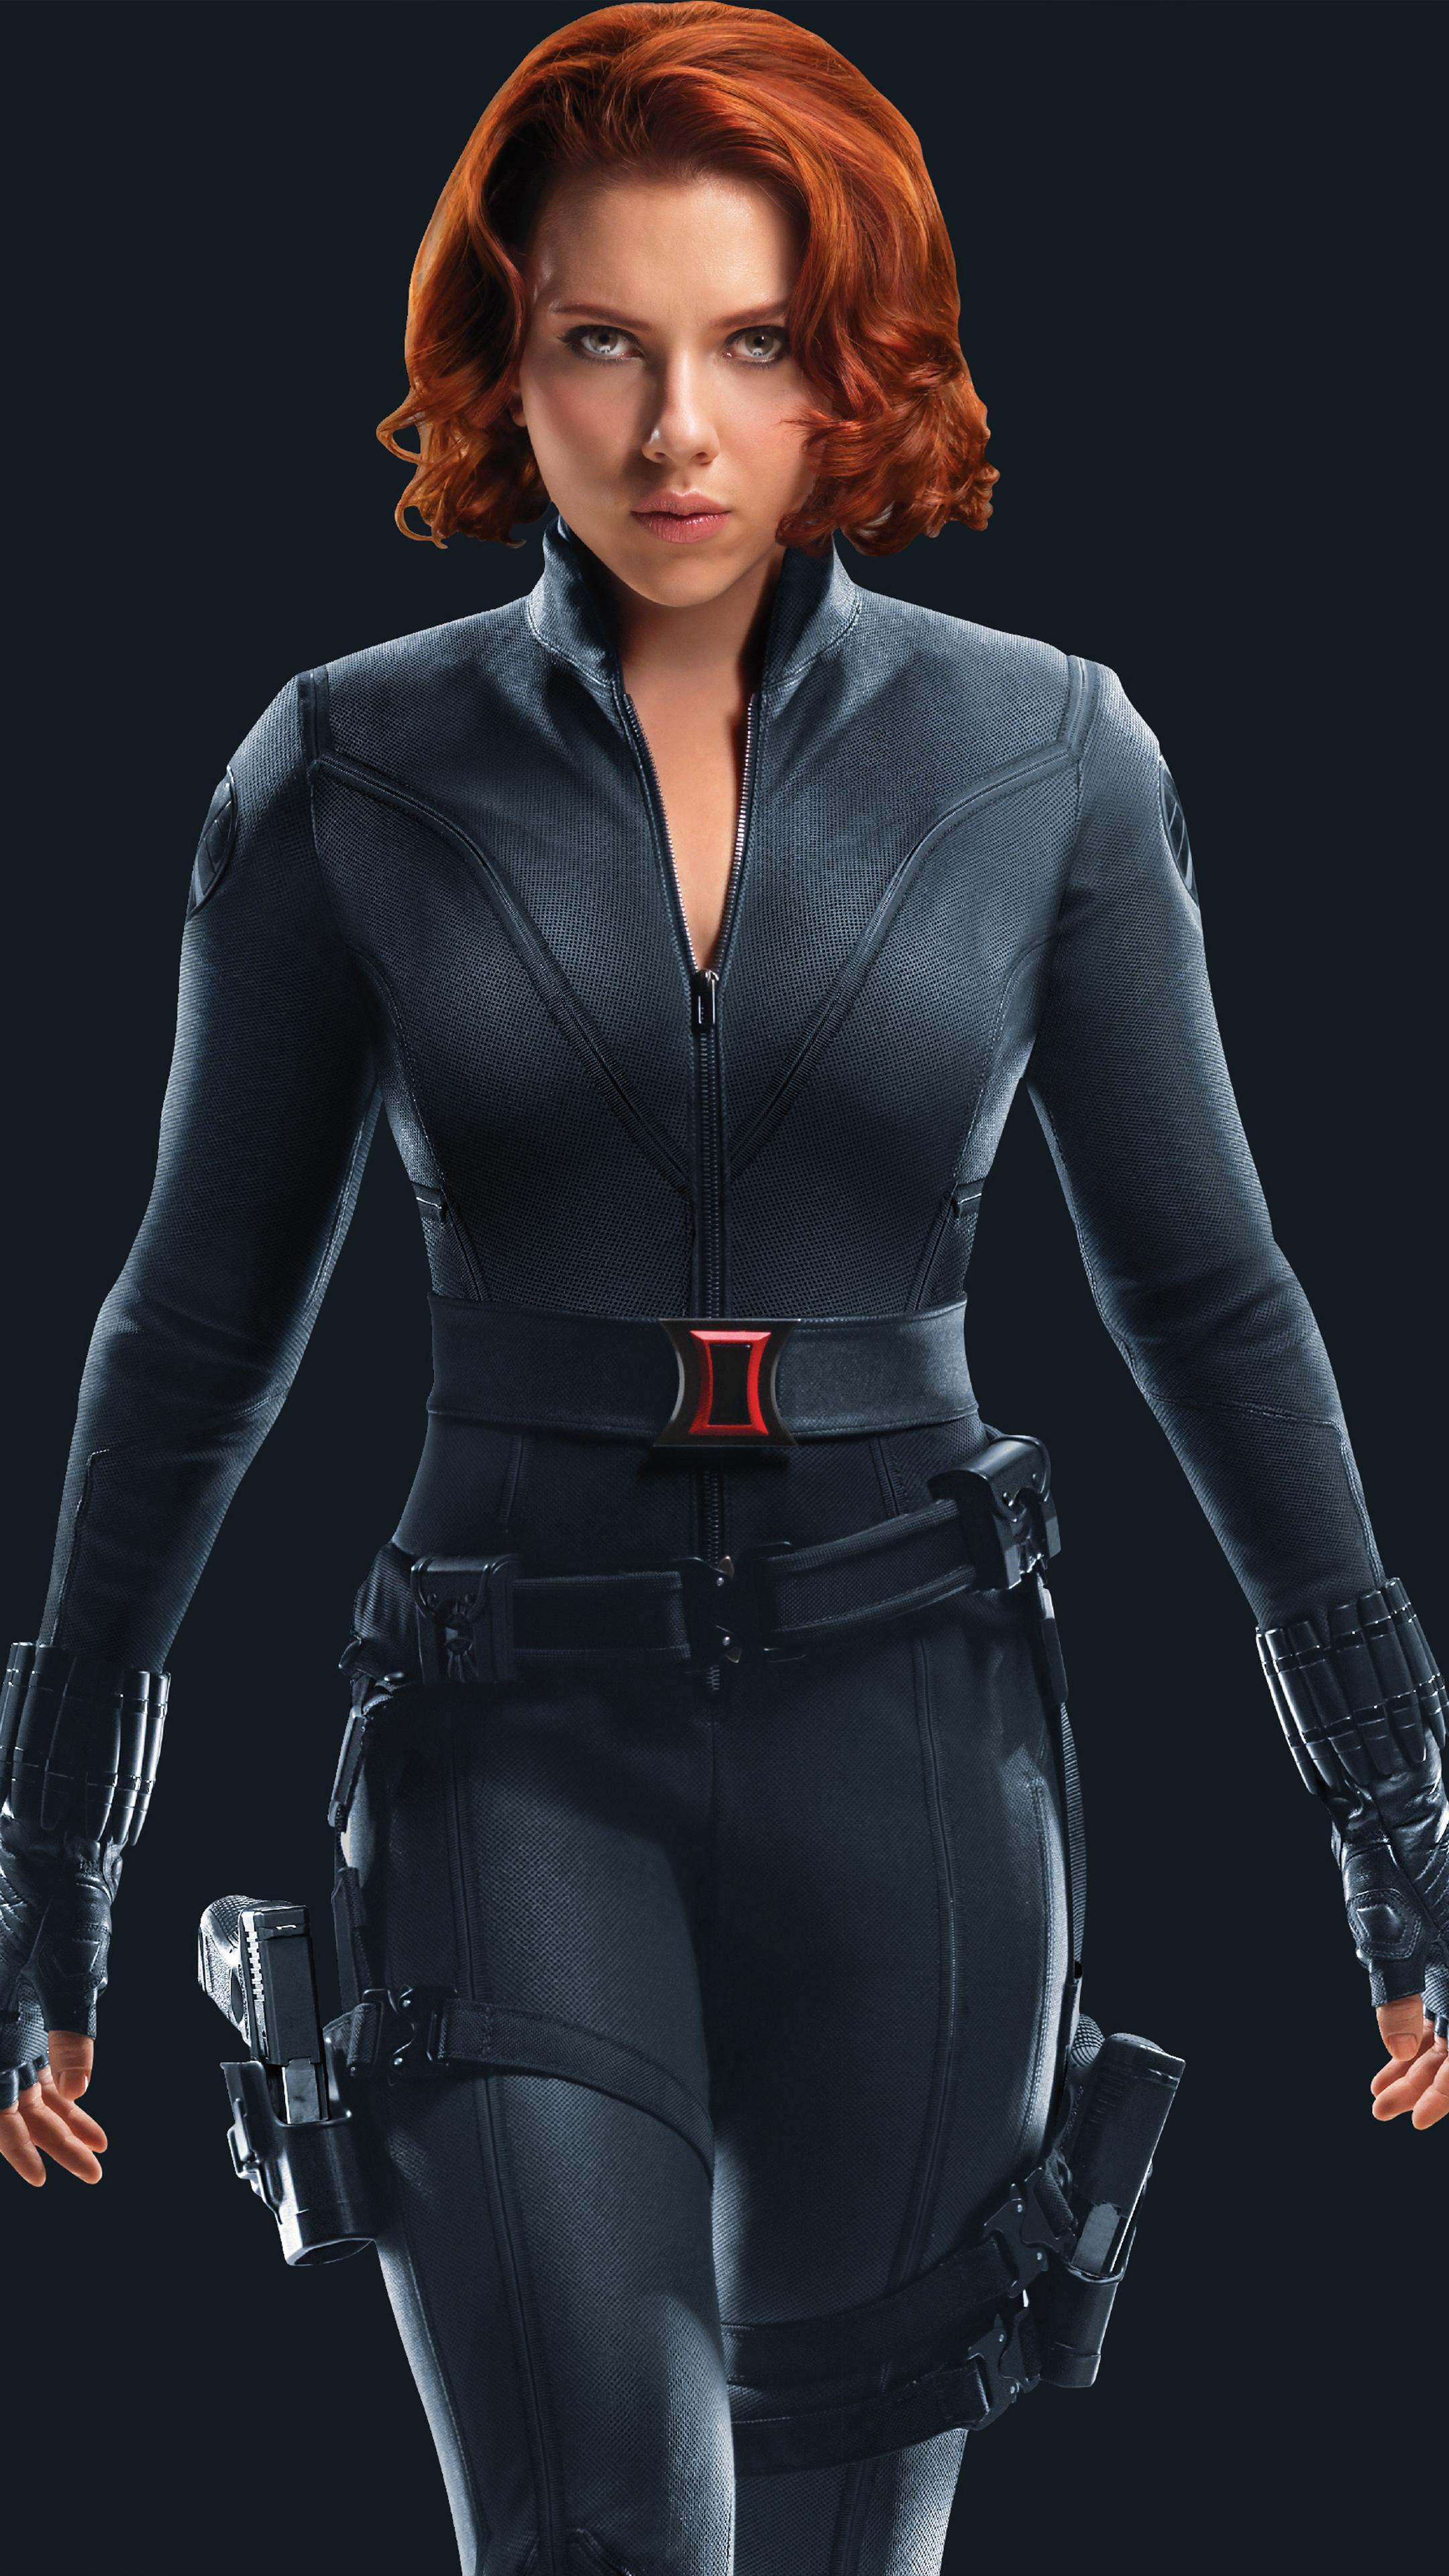 Black Widow Scarlett Johansson Superhero Free 4K Ultra HD Mobile